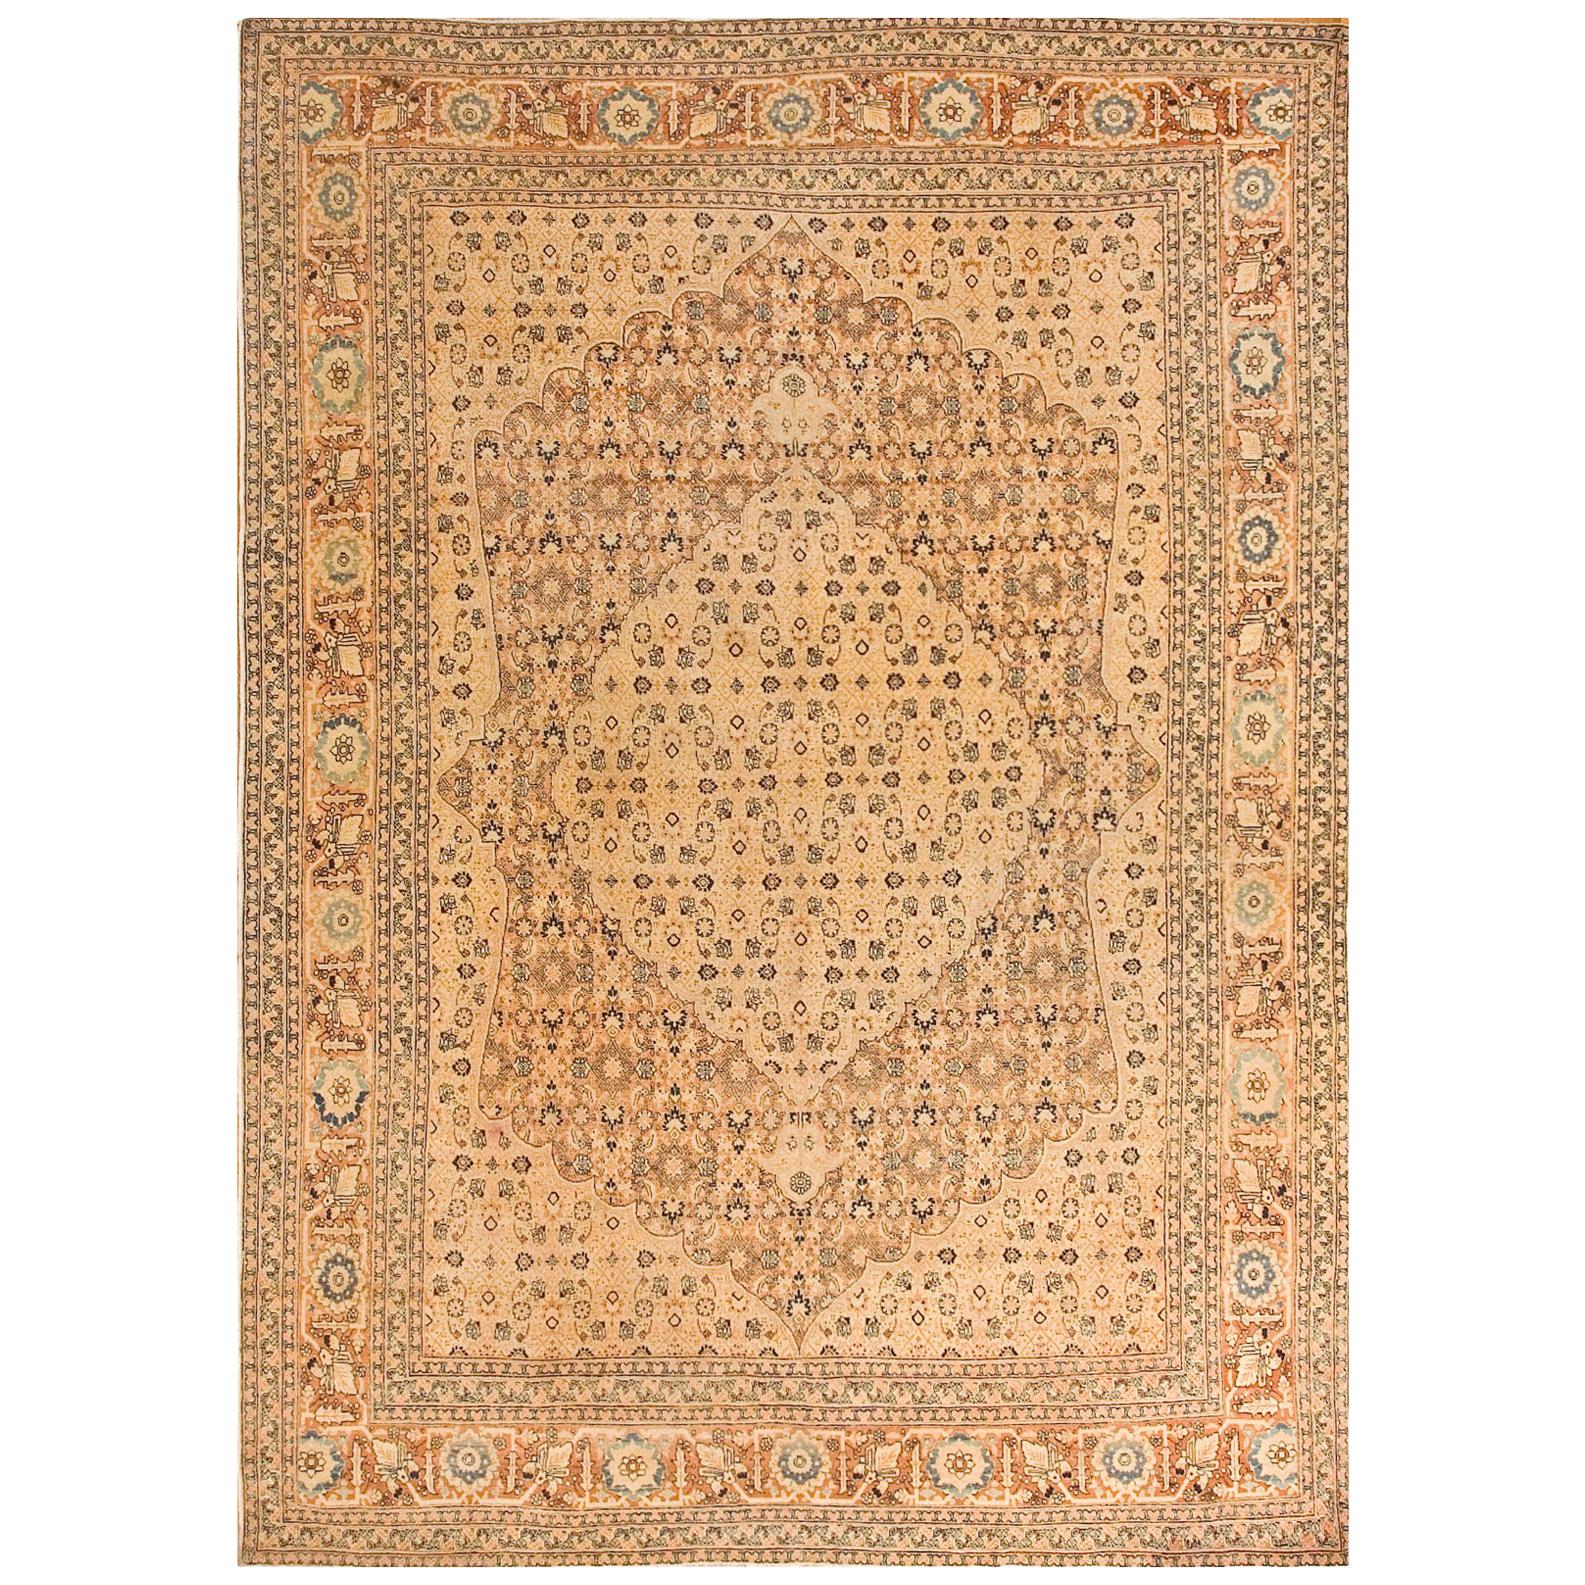 Persischer Täbris Haji Jalili-Teppich aus dem 19. Jahrhundert ( 7'2" x 10'2" - 218 x 310)